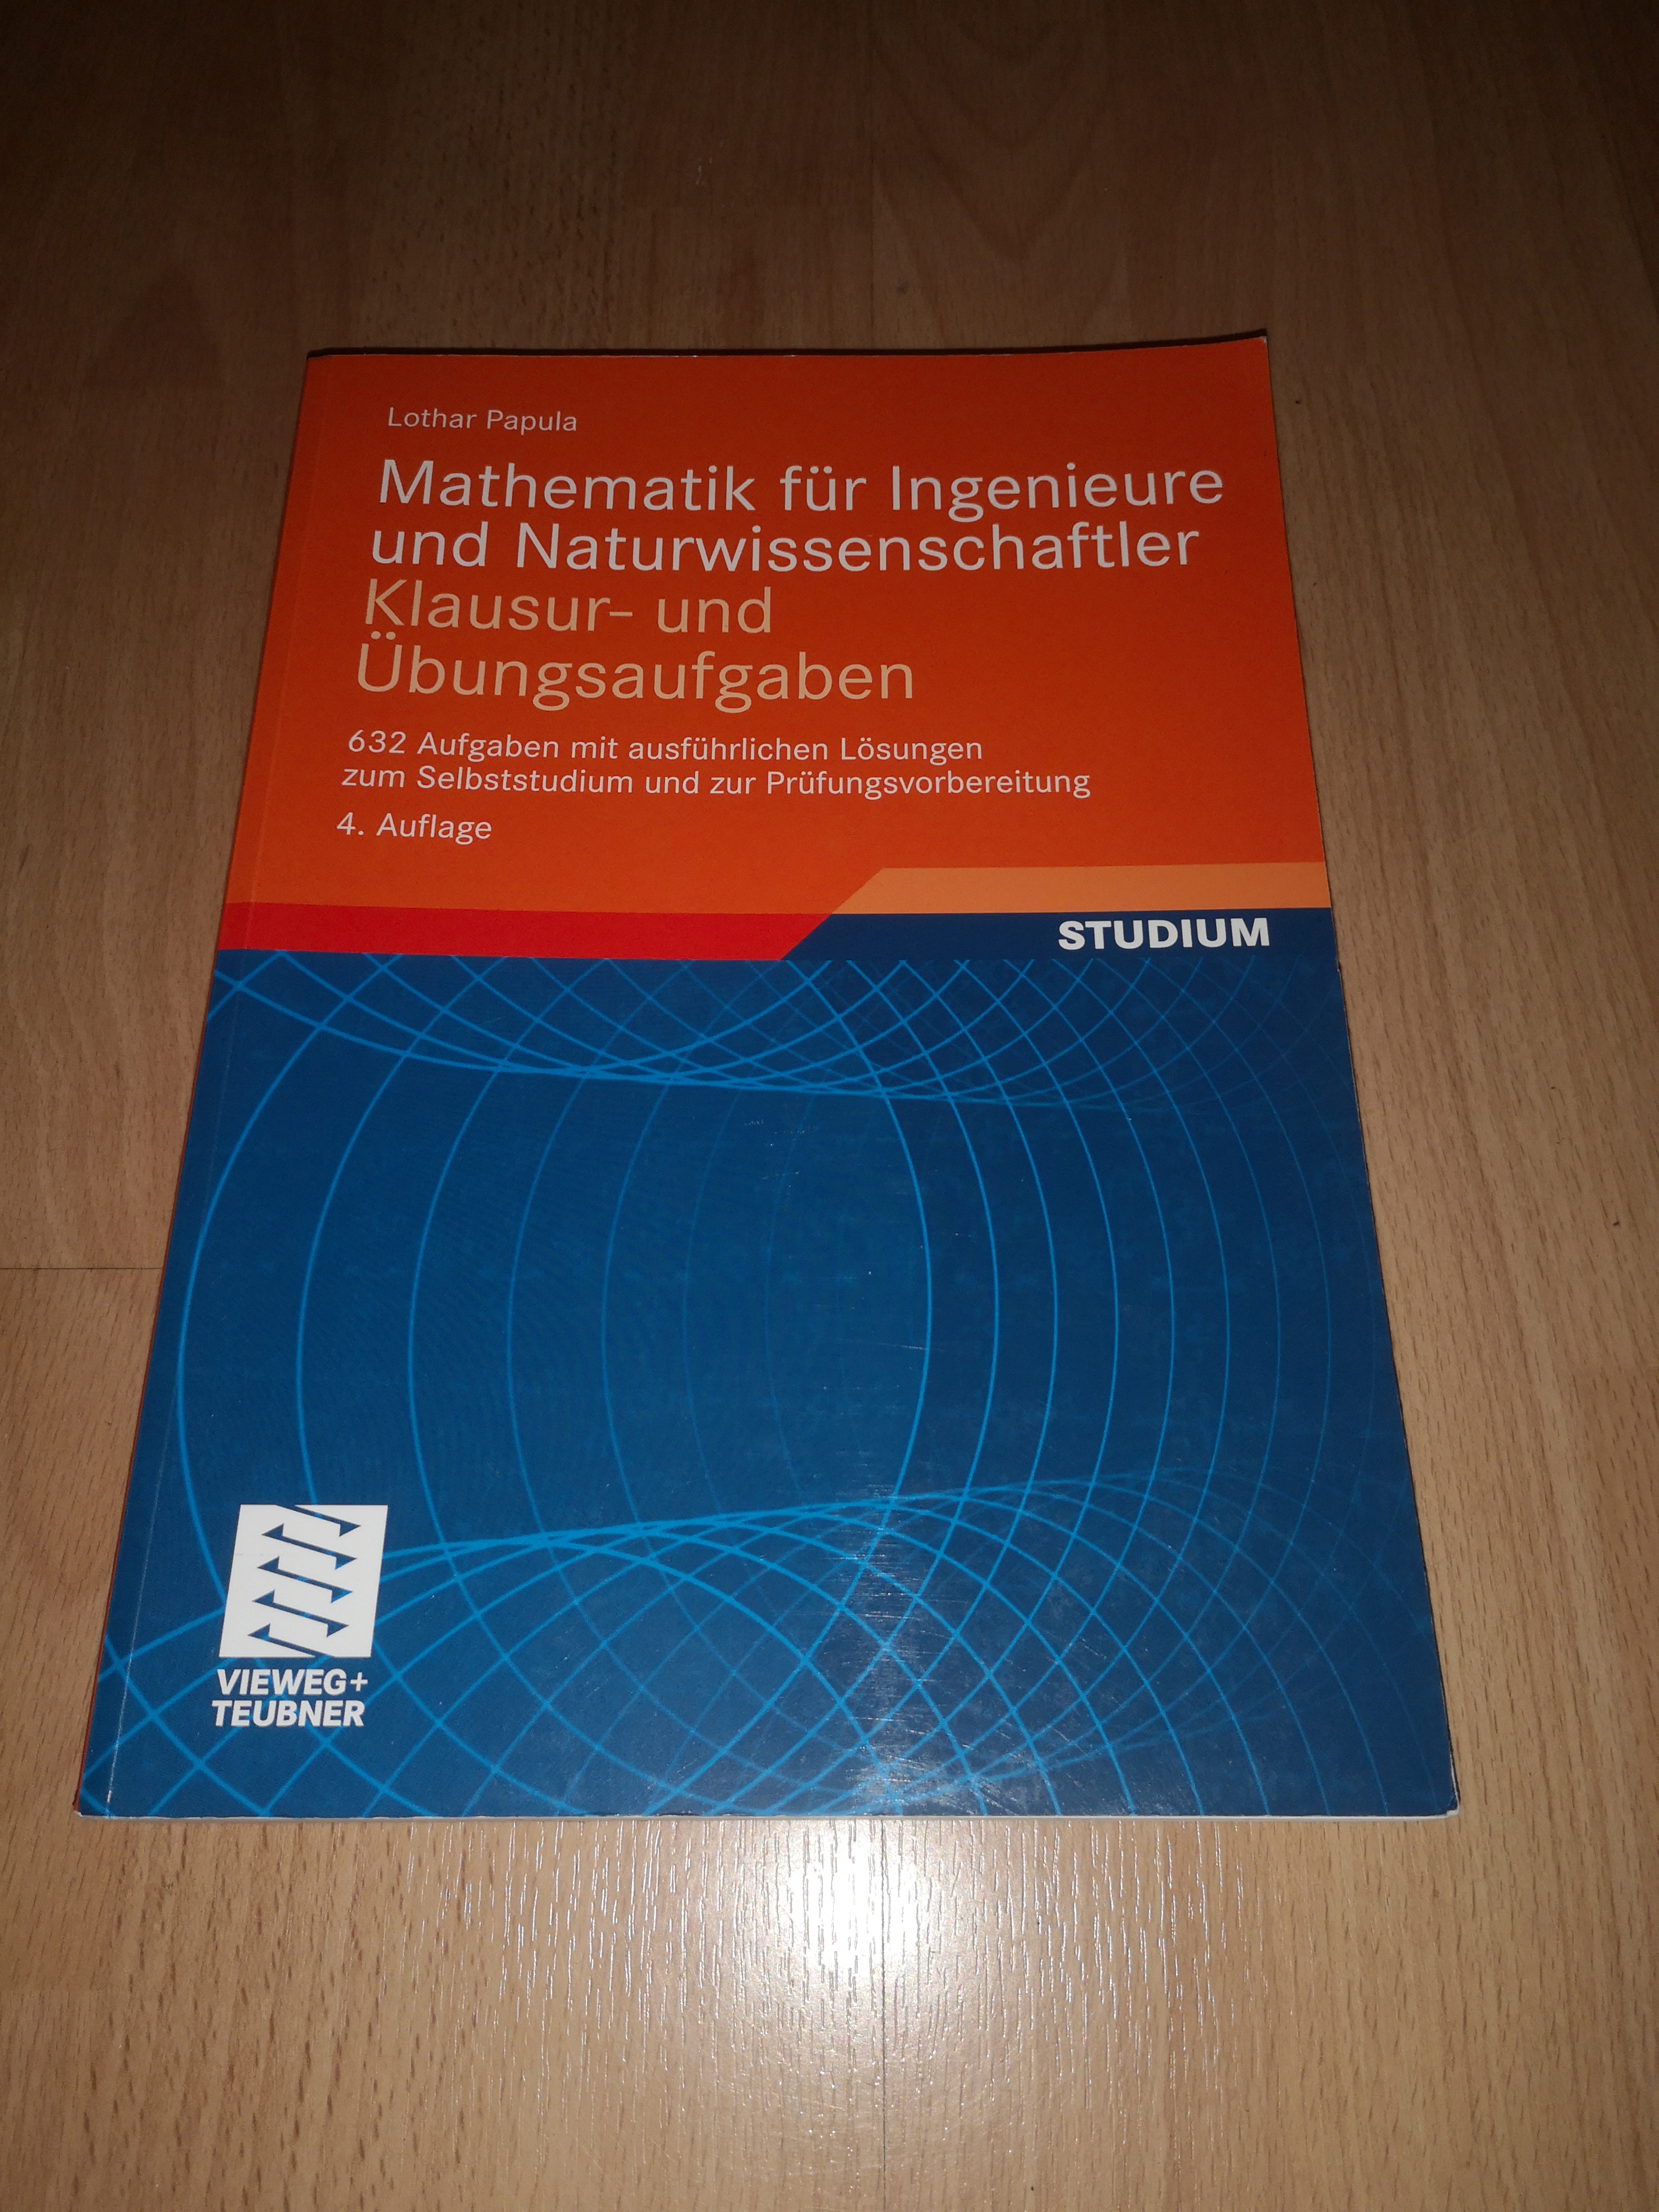 Lothar Papula, Mathematik für Ingenieure ...  - Klausur- und Übungsaufgaben / 4. Auflage  4. Auflage - Papula, Lothar